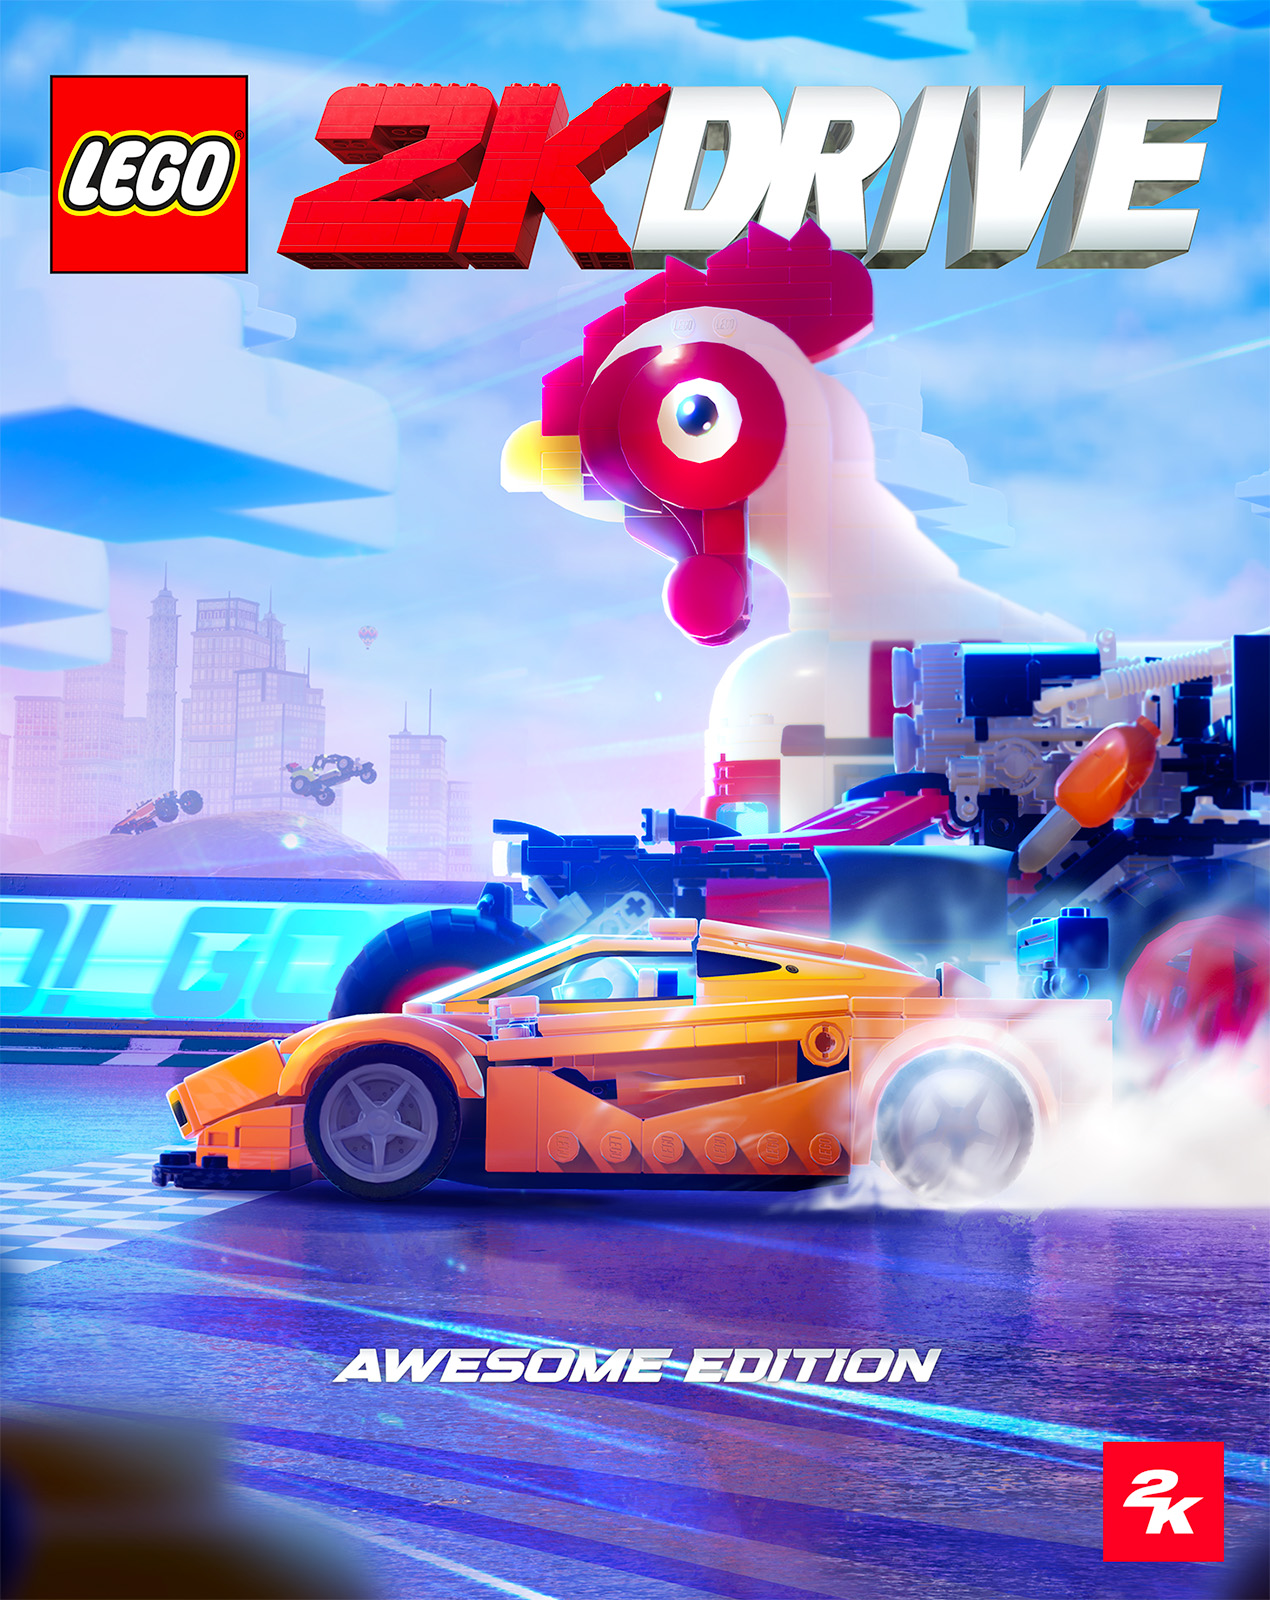 LEGO 2K Drive: trò chơi điện tử LEGO tiếp theo được công bố vào ngày 19 tháng 2023 năm XNUMX